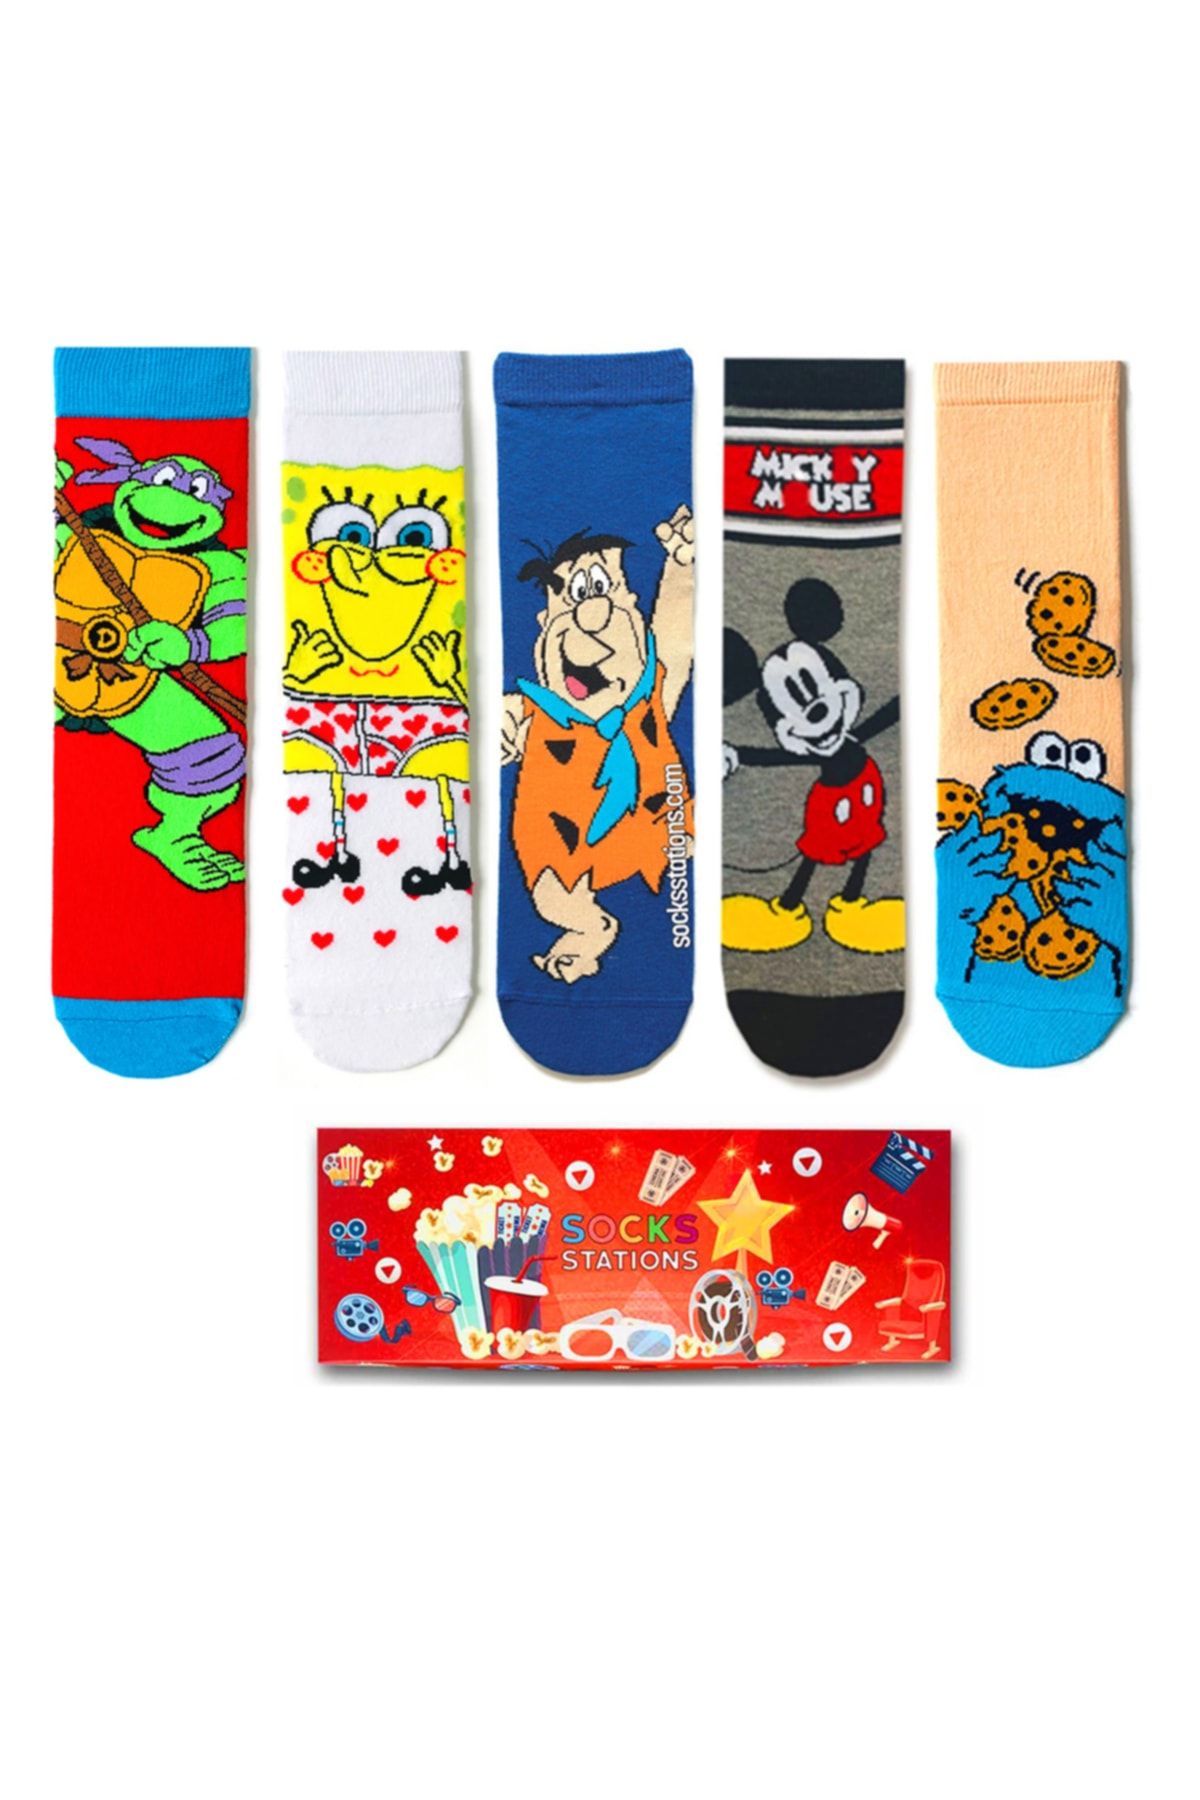 Socks Stations 5’li Çizgi Karakterler Desenli Çorap Kutusu/ Yılbaşı Çorapları Ve Yılbaşı Hediyesi